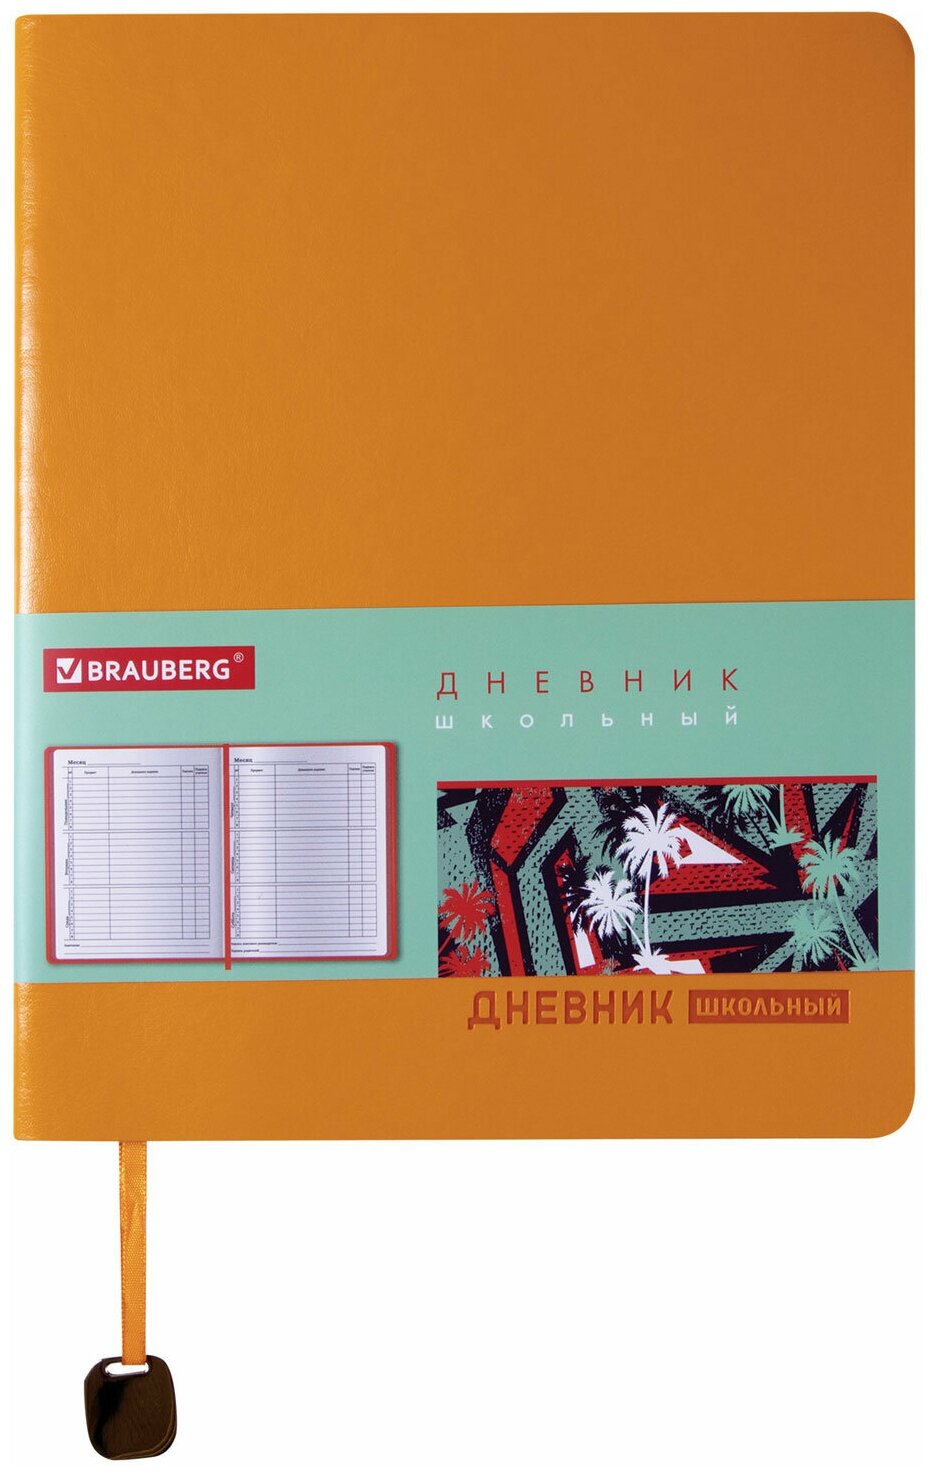 BRAUBERG Дневник Original 105445-105450, оранжевый